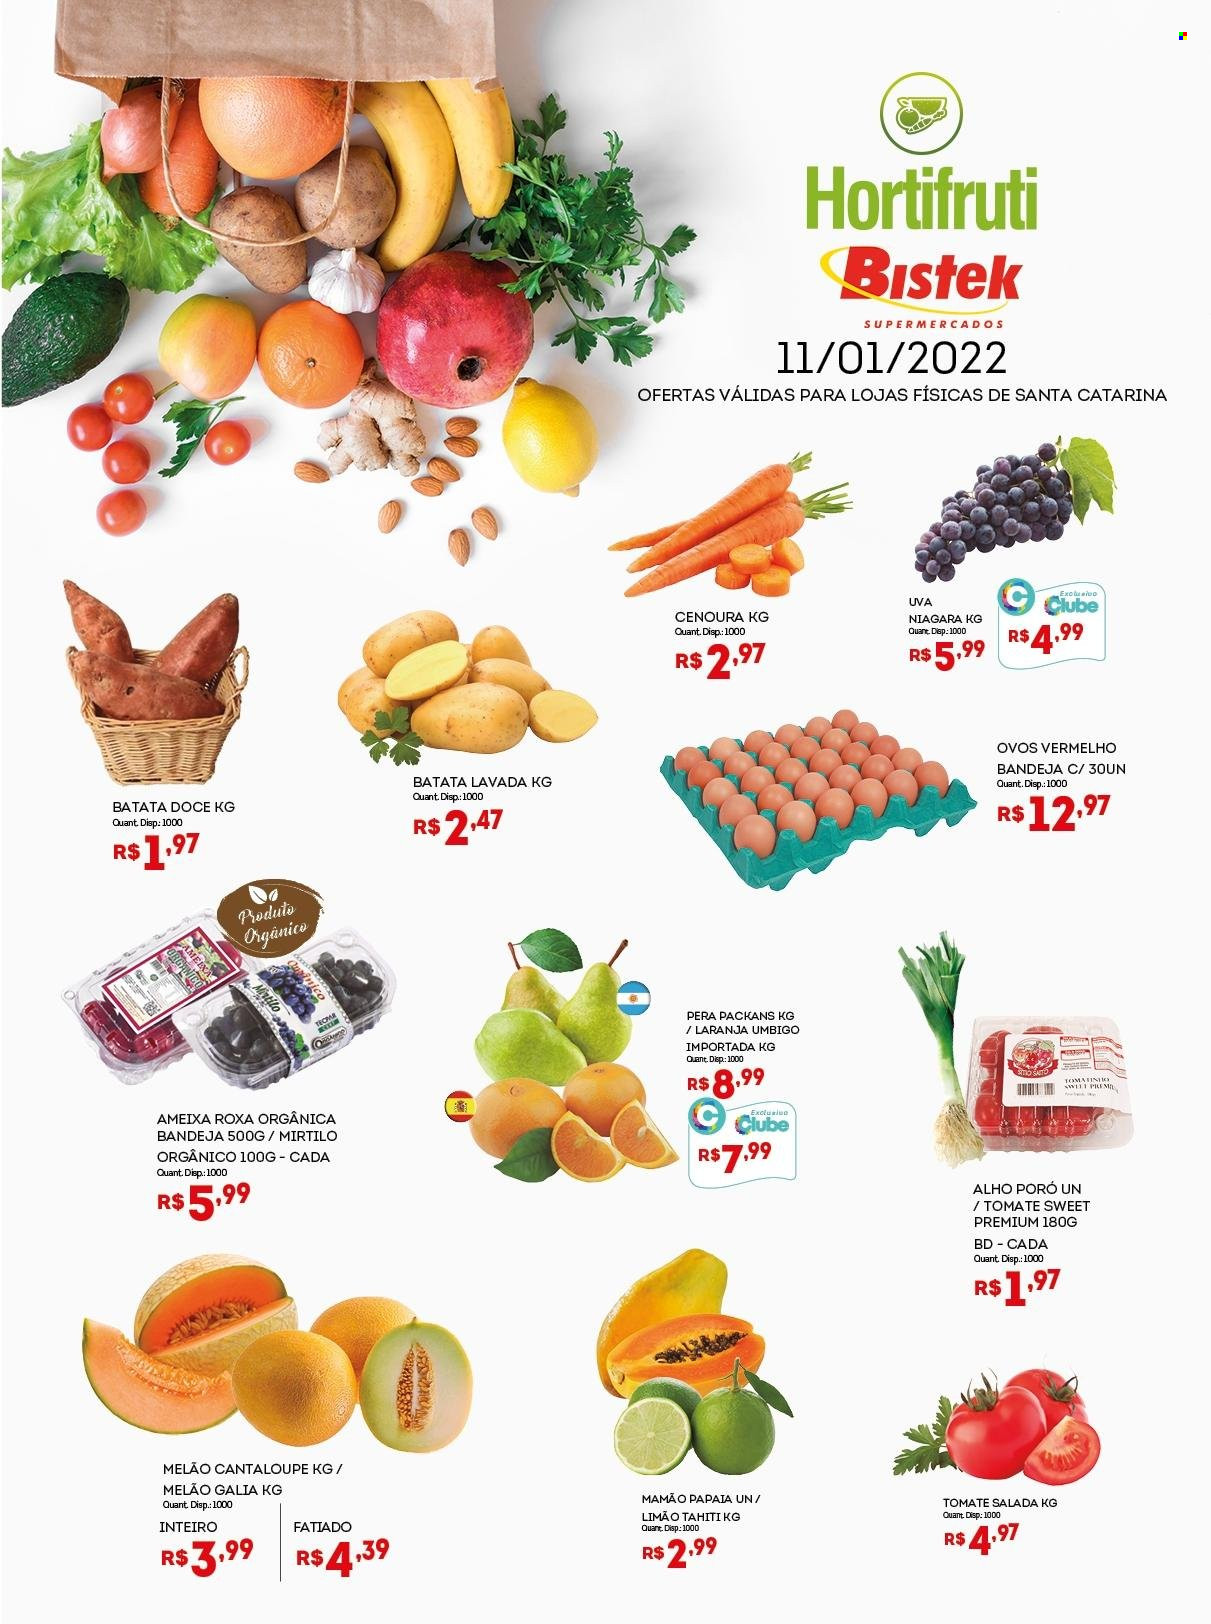 thumbnail - Folheto Bistek Supermercados - 11/01/2022 - 11/01/2022 - Produtos em promoção - laranja, papaia, melão, uva, ameixa, limão, mamão, batata-doce, alho-poró, cenoura, ovos, bandeja. Página 1.